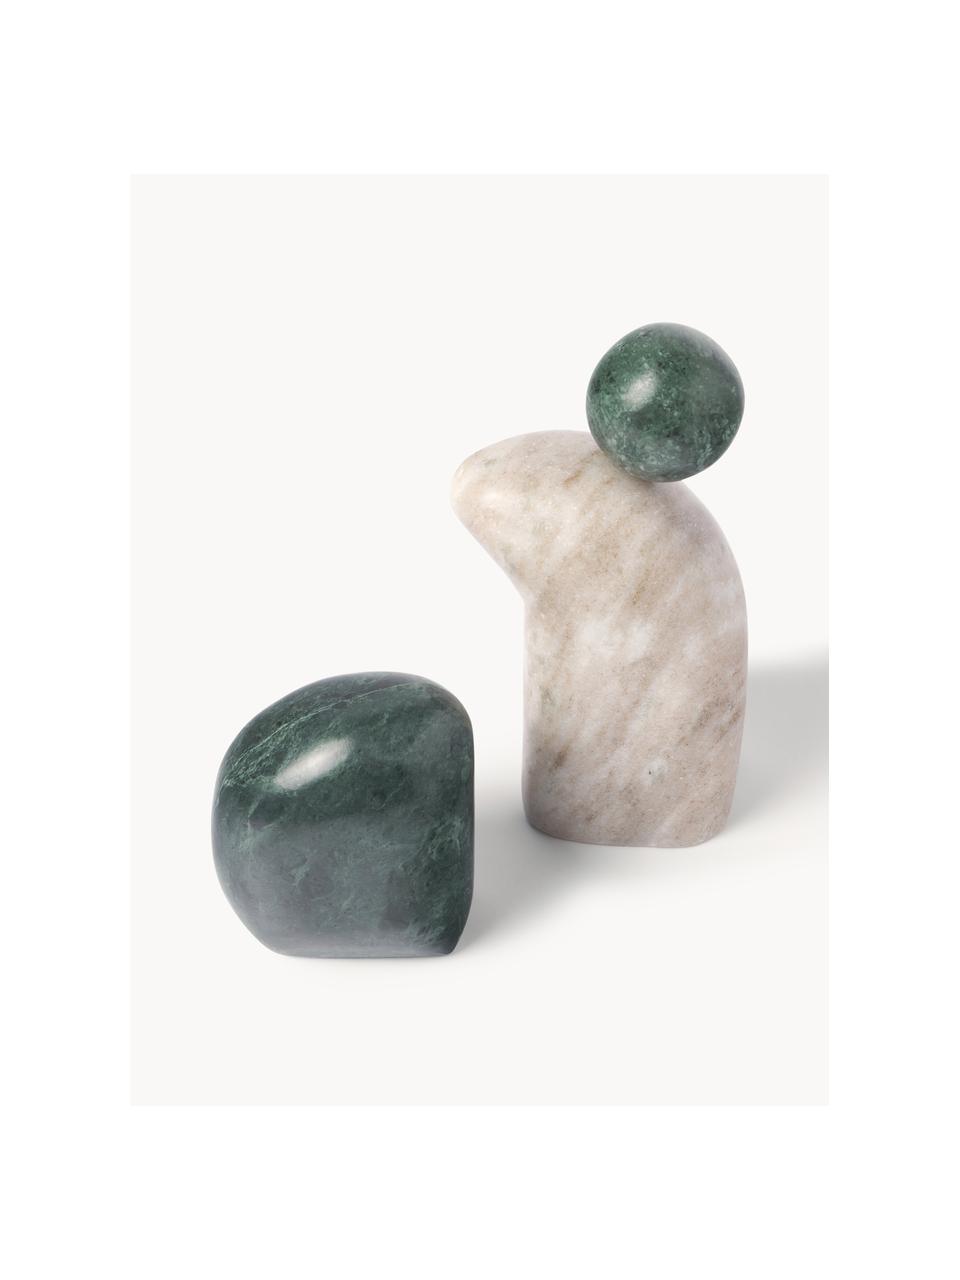 Deko-Objekte Nati aus Marmor, 2er-Set, Marmor, Dunkelgrün, Hellbeige, marmoriert, Set mit verschiedenen Größen